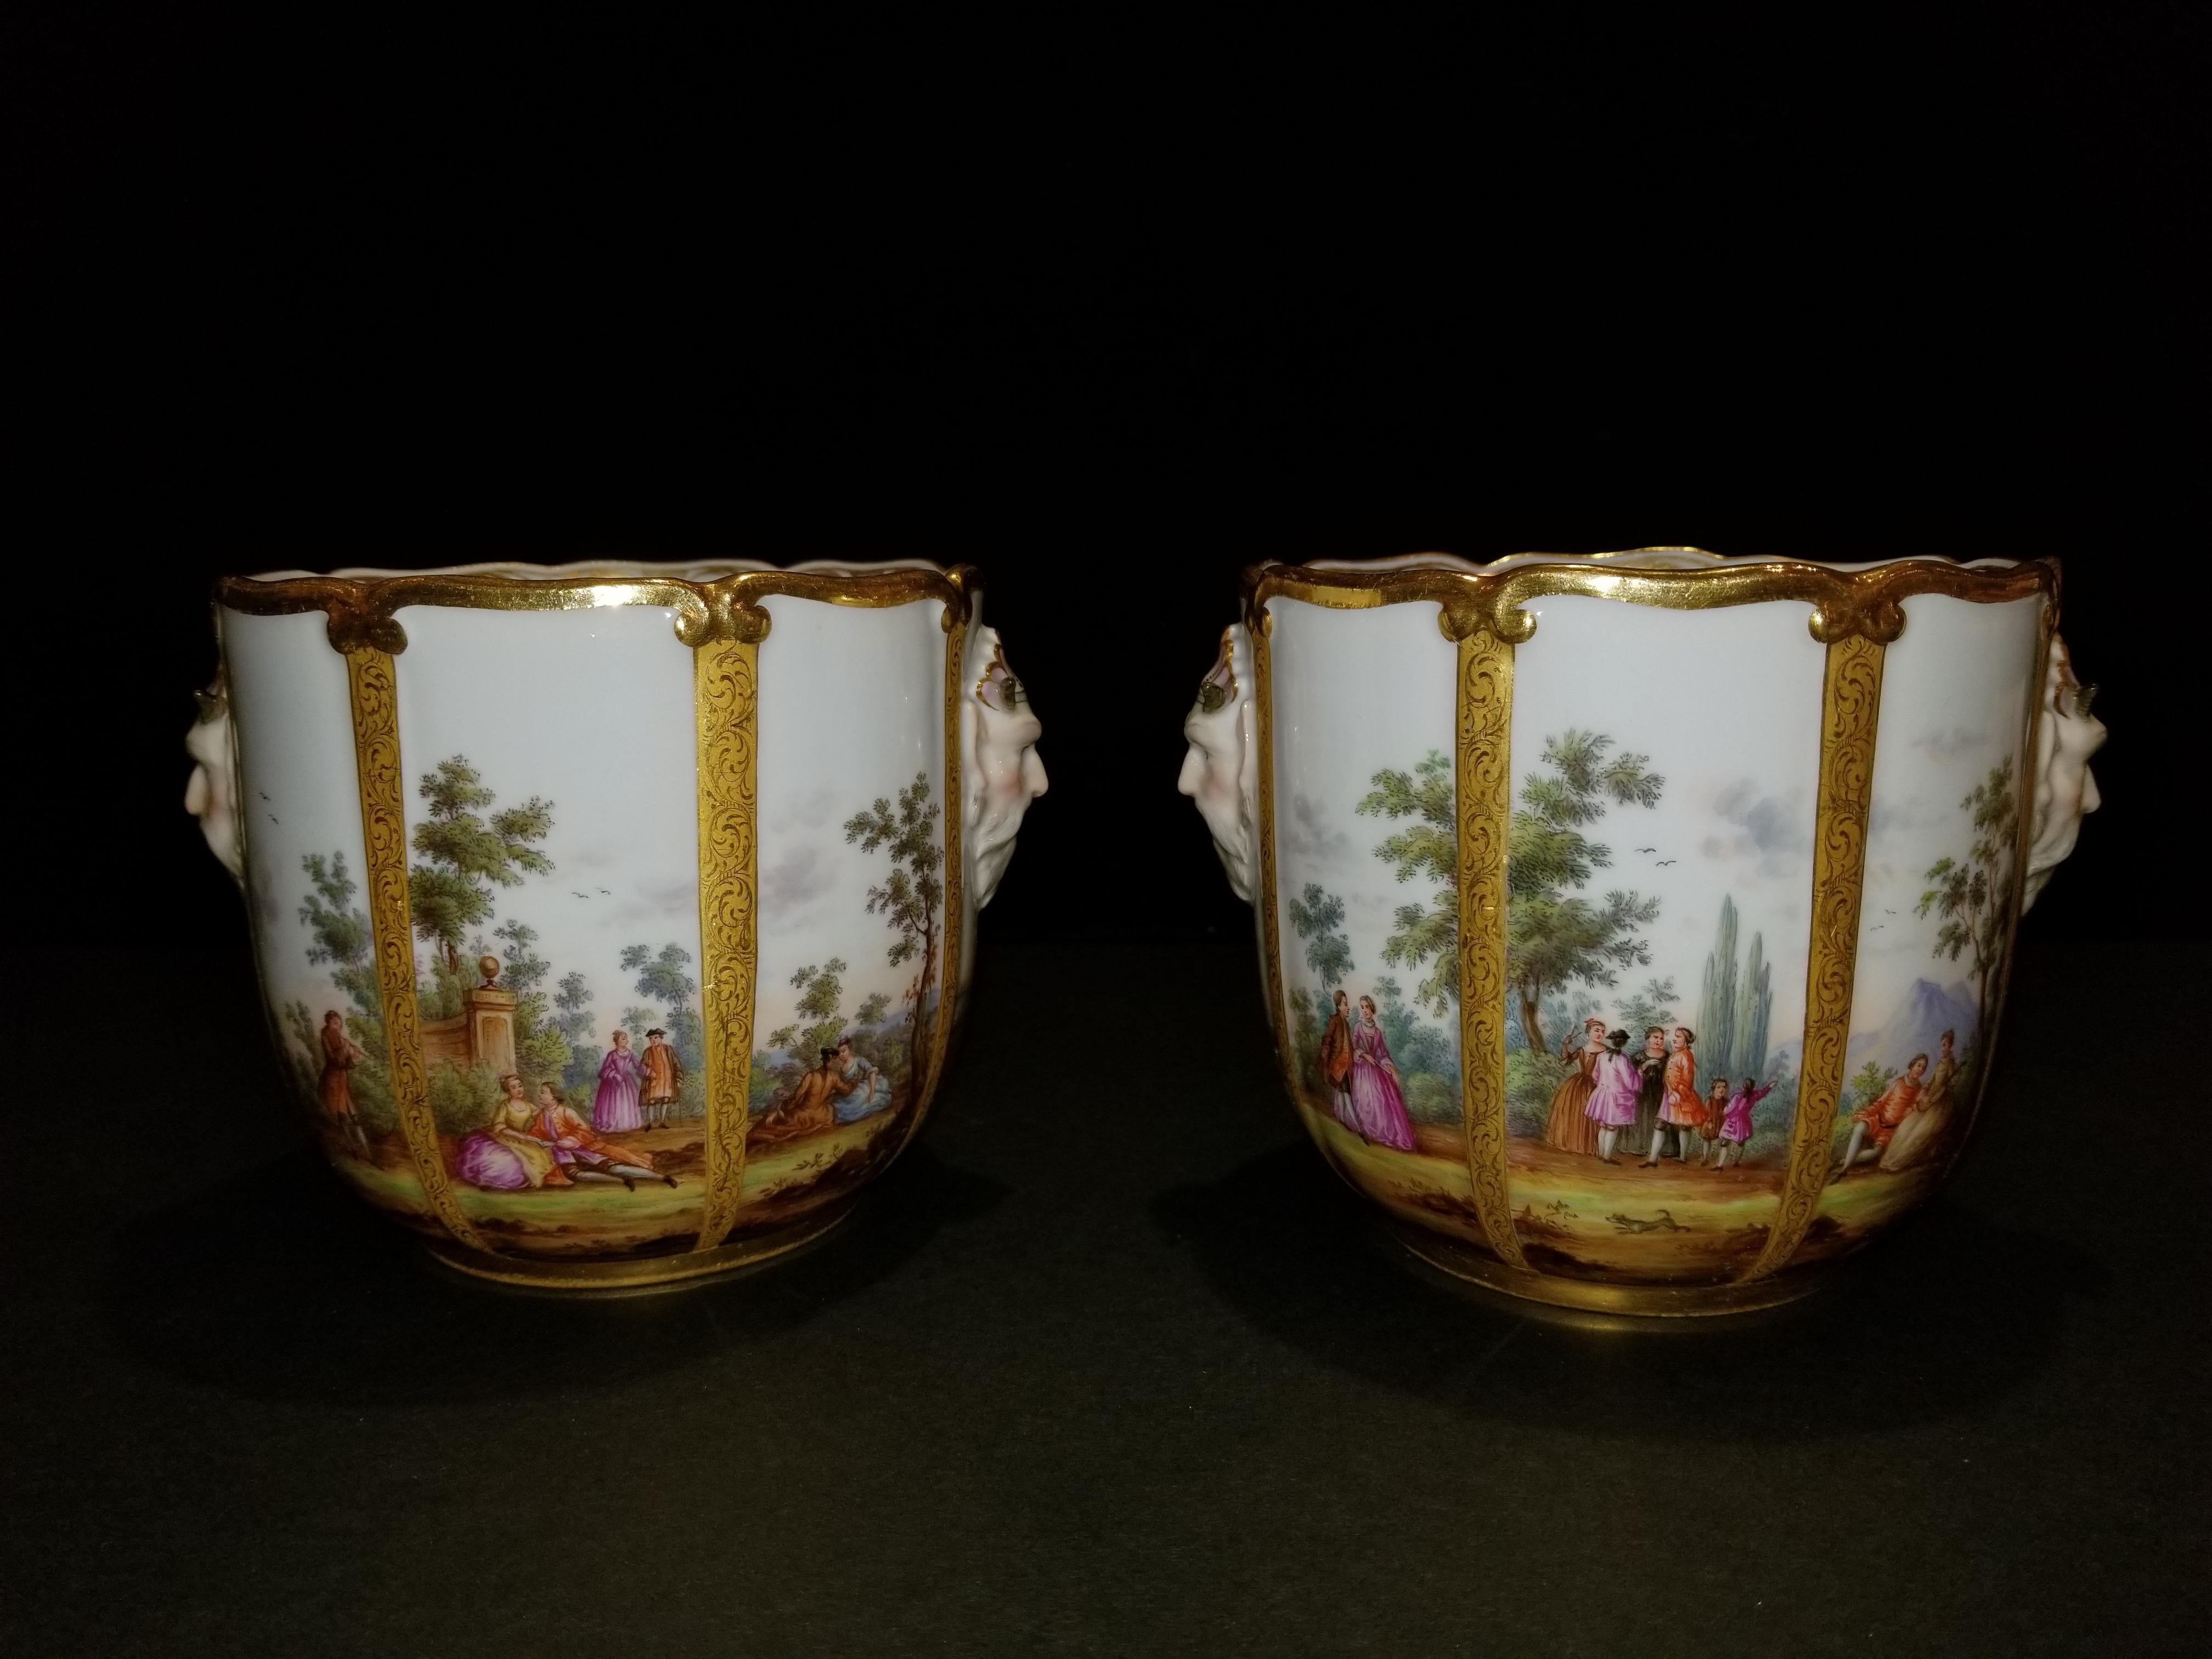 Une fabuleuse paire de glacières/cache-pots en porcelaine de Meissen. Cette paire exceptionnelle de glacières en porcelaine de Meissen peintes à la main est ornée de panneaux représentant des personnages dans un paysage, y compris des scènes